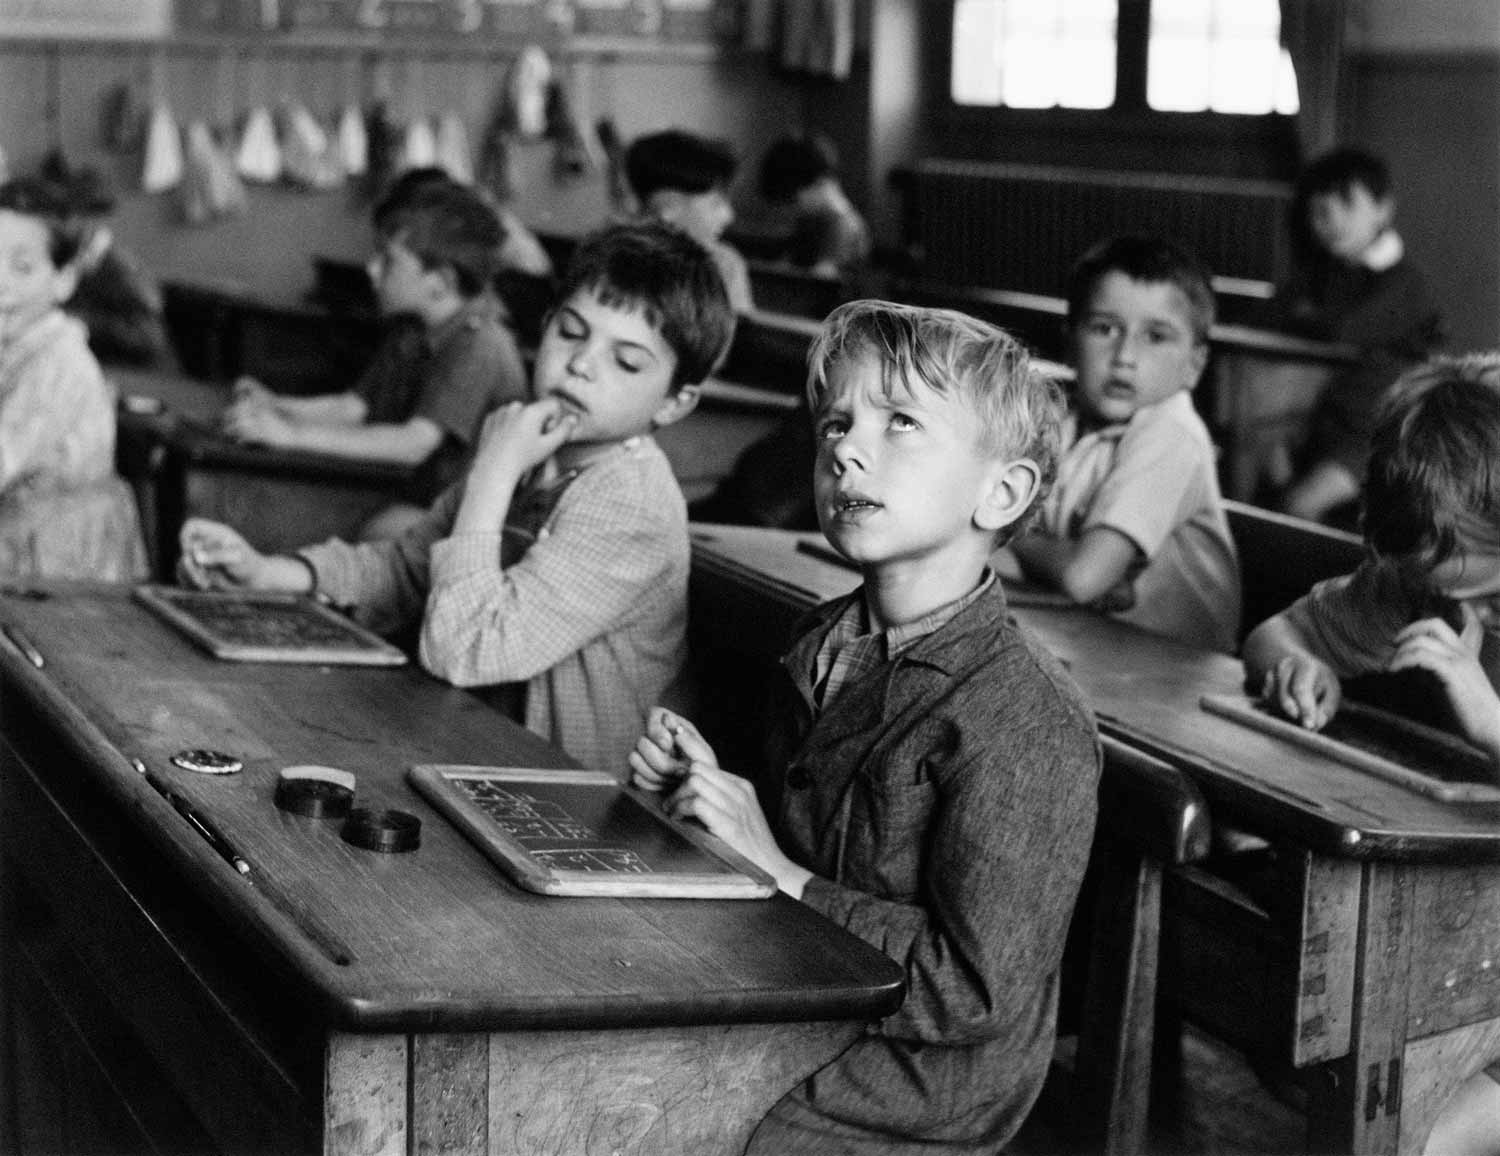 L’information scolaire/L'nformazione scolastica, Parigi (1956)